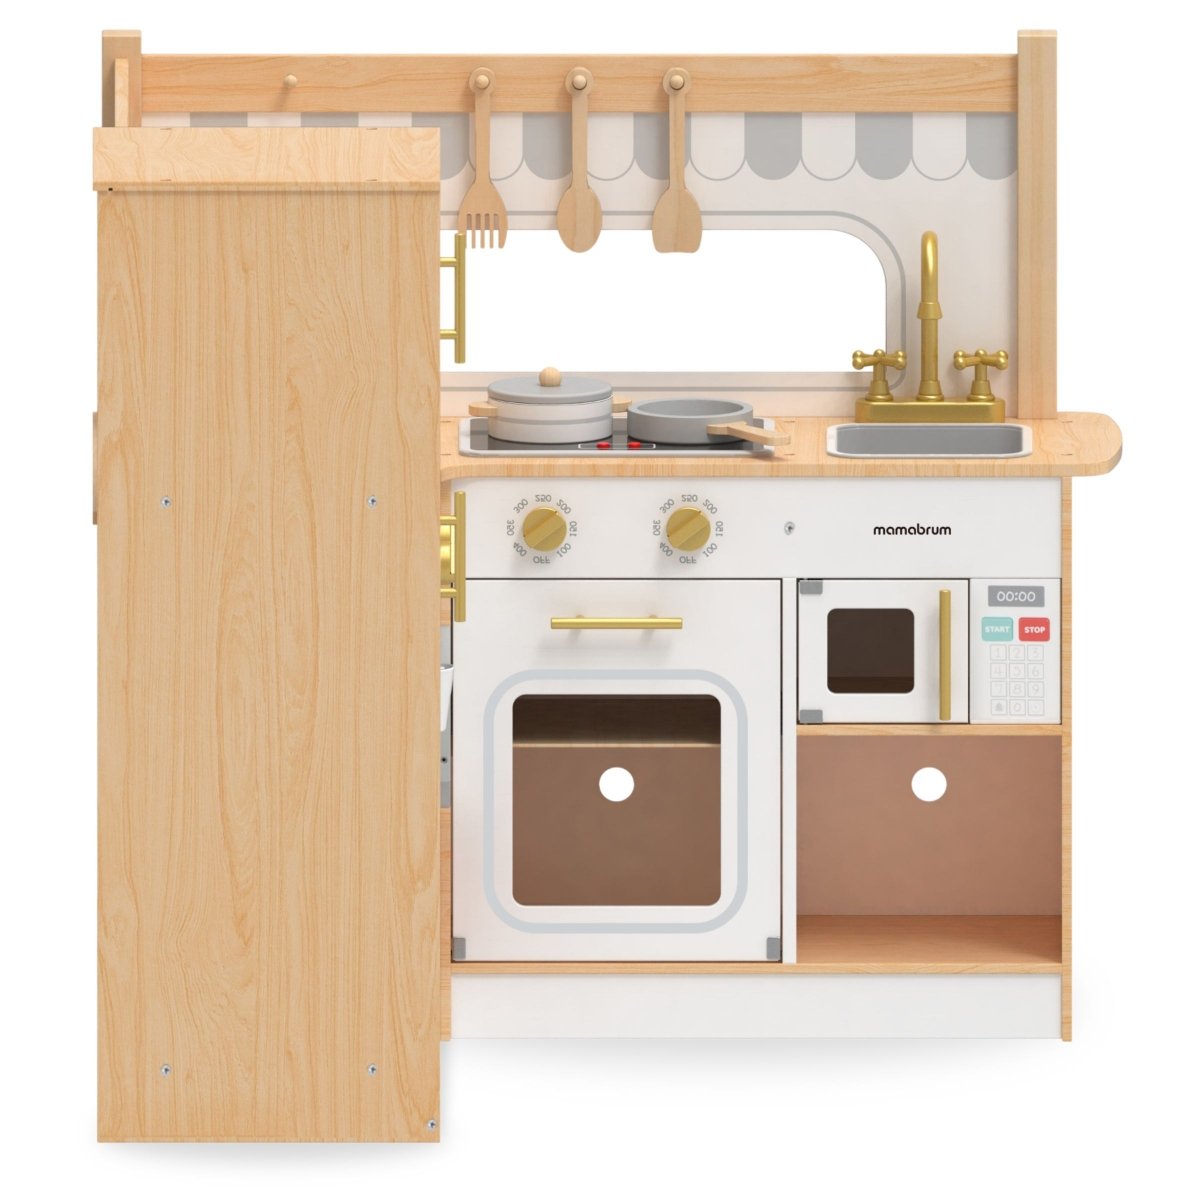 Drewniana, interaktywna kuchnia narożna XXXL z lodówką, mikrofalą, piekarnikiem, pralką i akcesoriami - naturalna